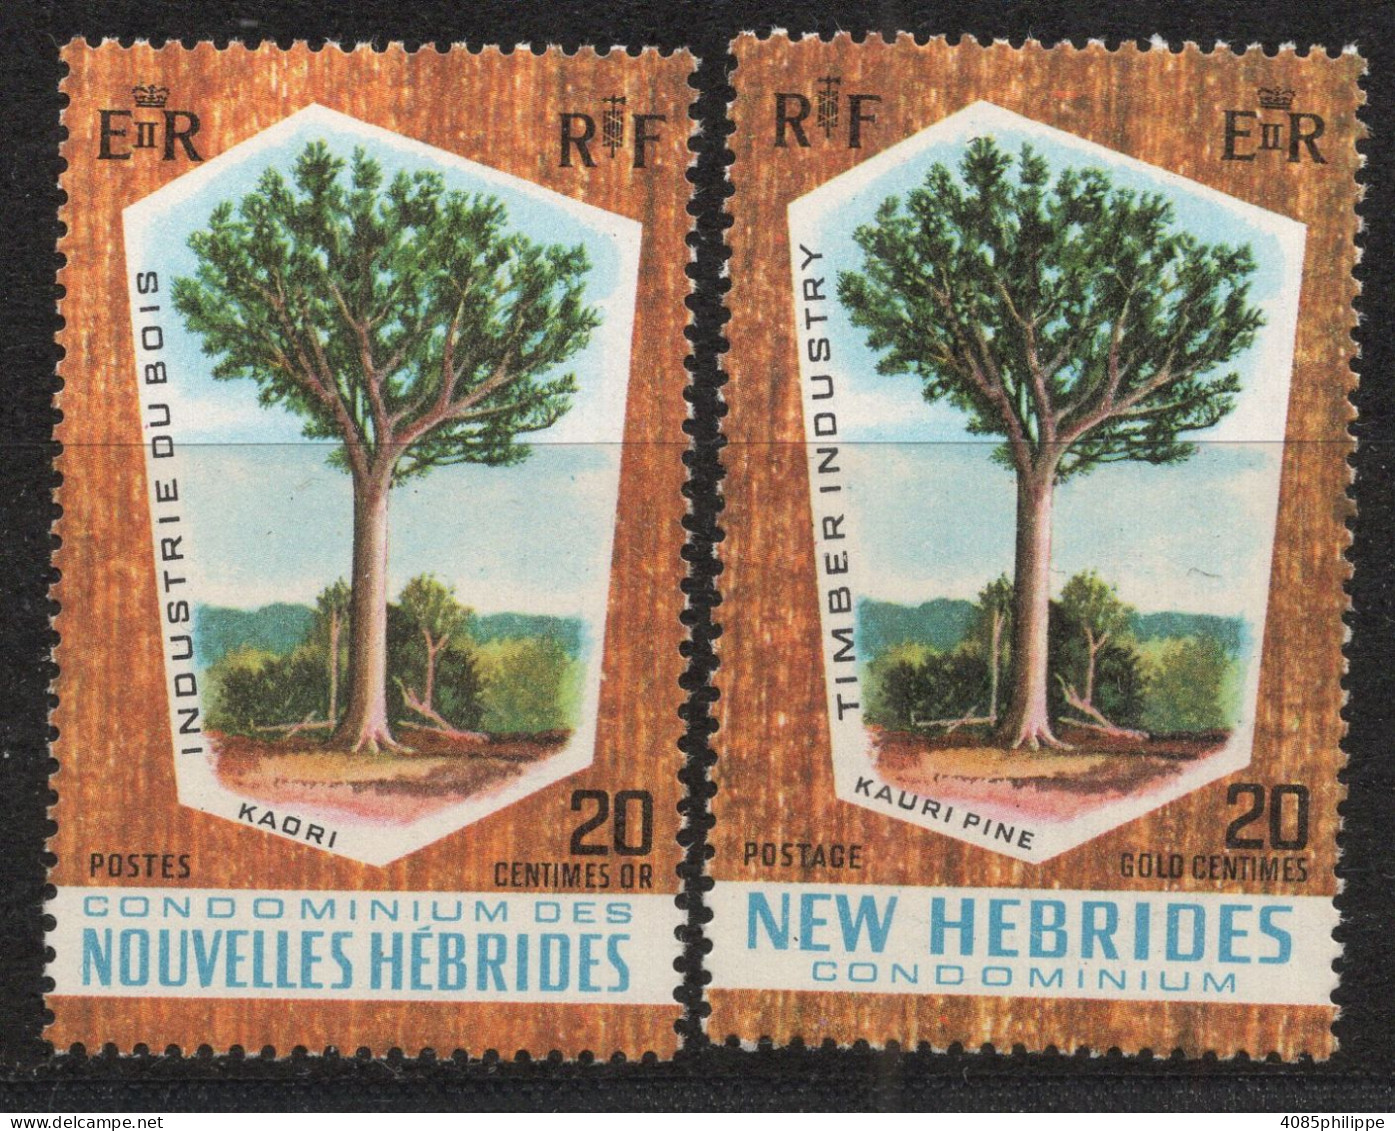 Nouvelles HEBRIDES Timbres-poste N°280* & 281* Neufs Charnières TB Cote : 2€25 - Unused Stamps